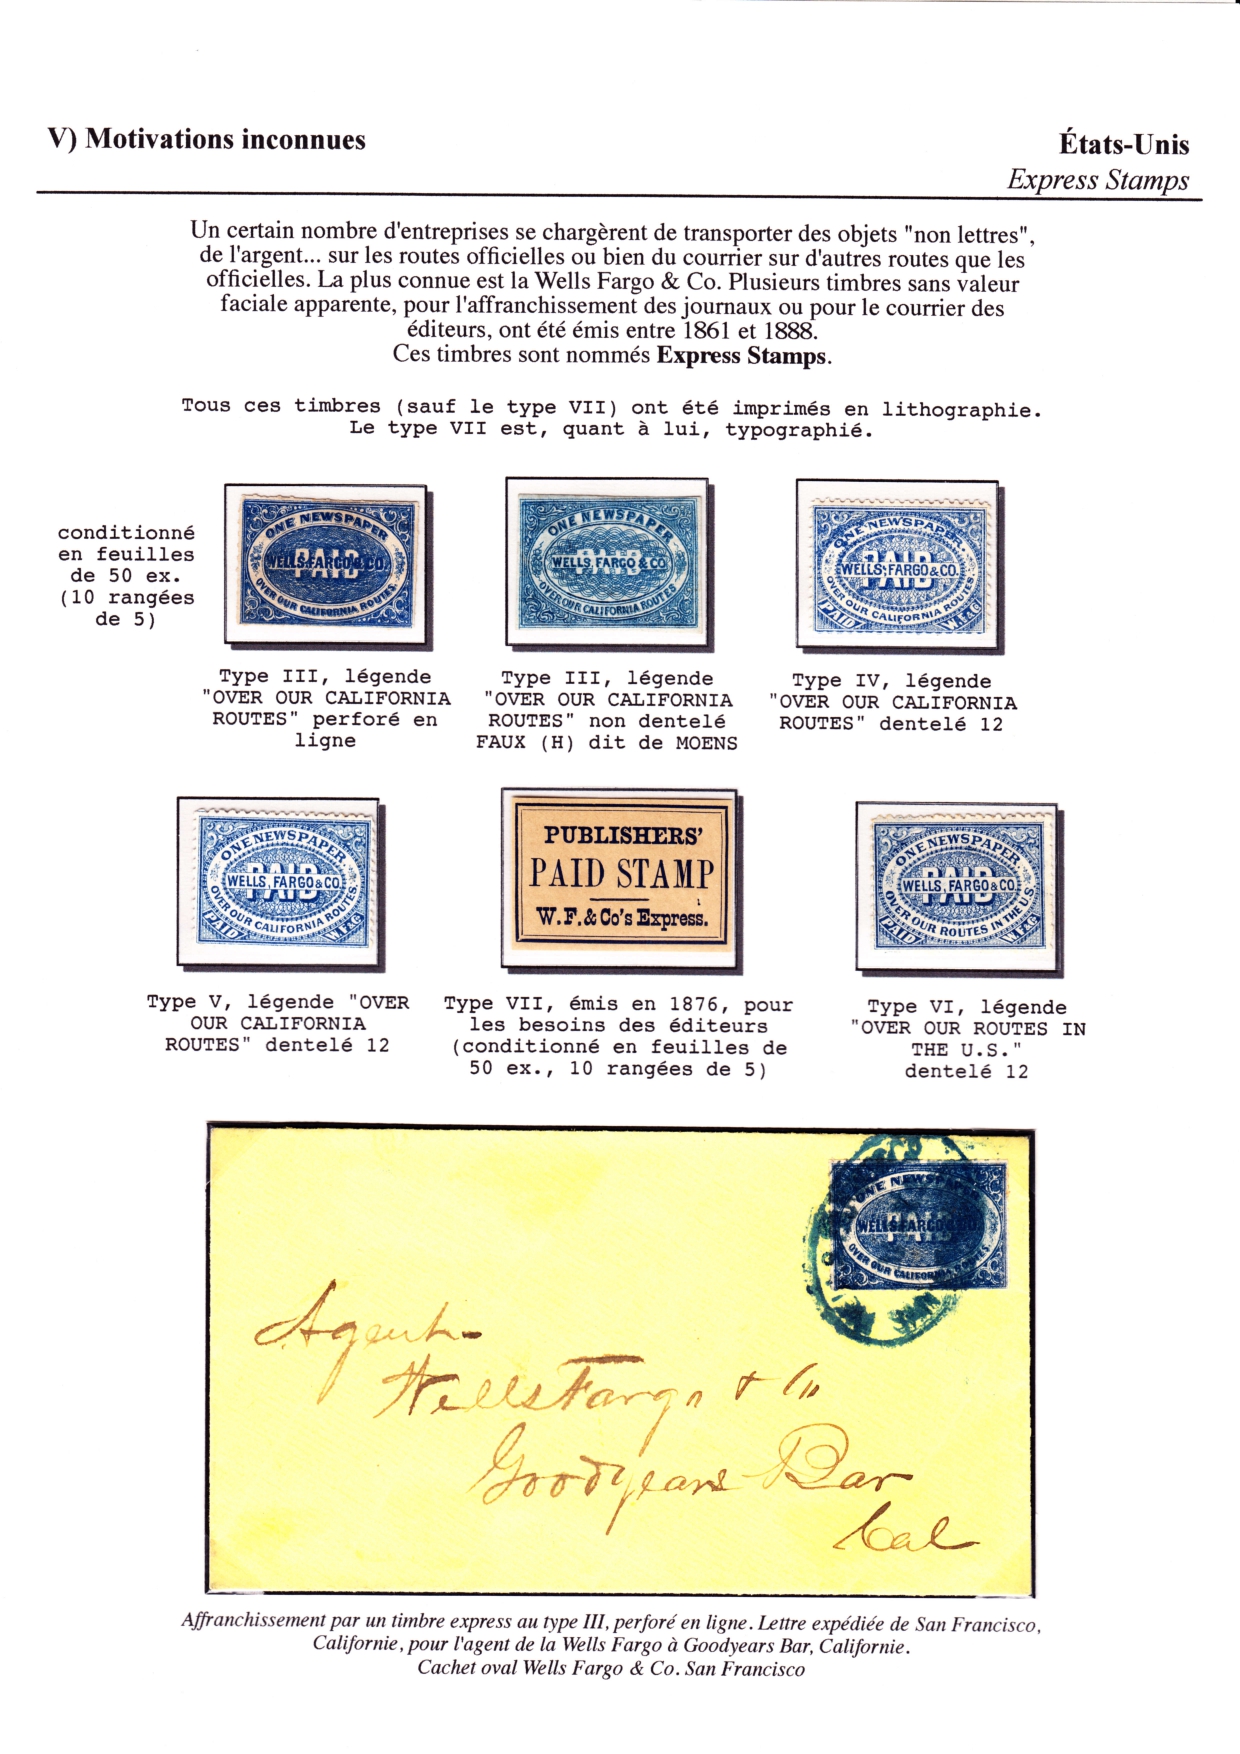 Les d��buts des timbres sans valeur faciale apparente p. 71